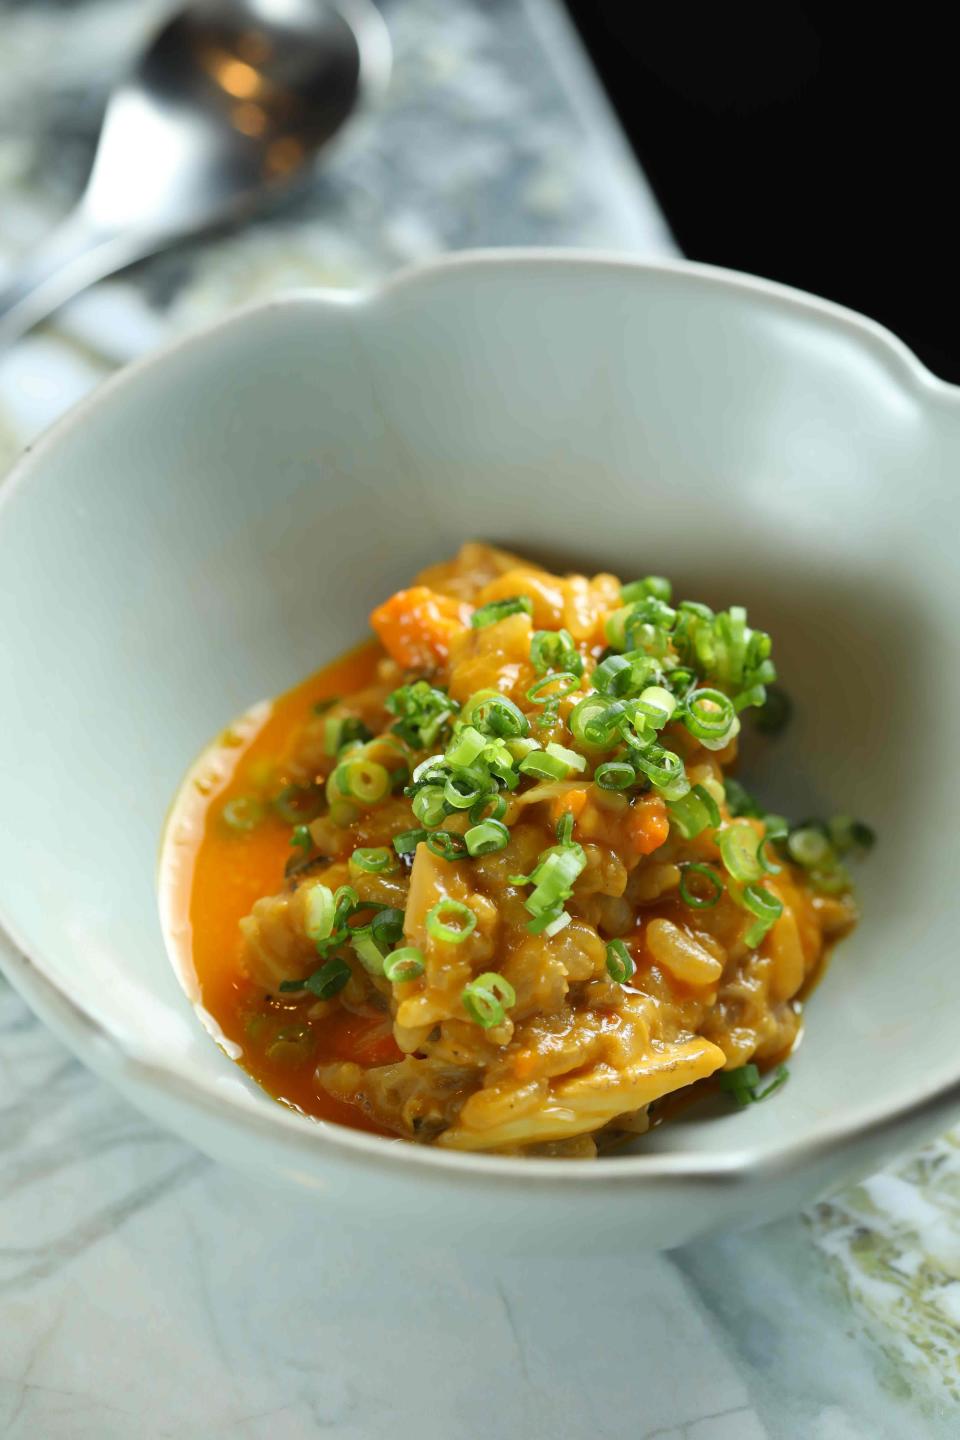 「大閘蟹雜炊」融合了大閘蟹與各種精選食材的精華於一「粥」。